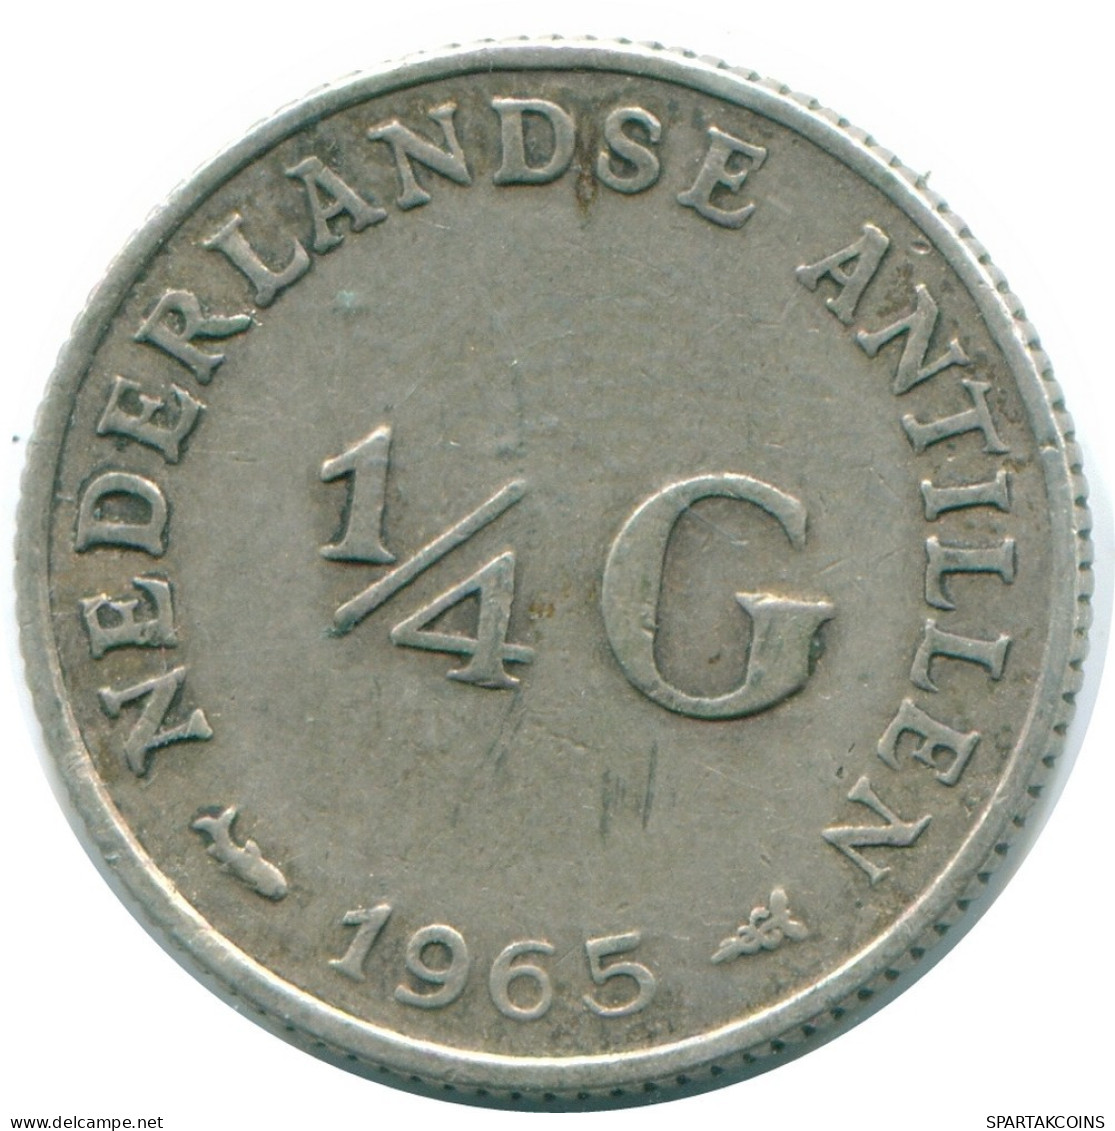 1/4 GULDEN 1965 NIEDERLÄNDISCHE ANTILLEN SILBER Koloniale Münze #NL11352.4.D.A - Niederländische Antillen